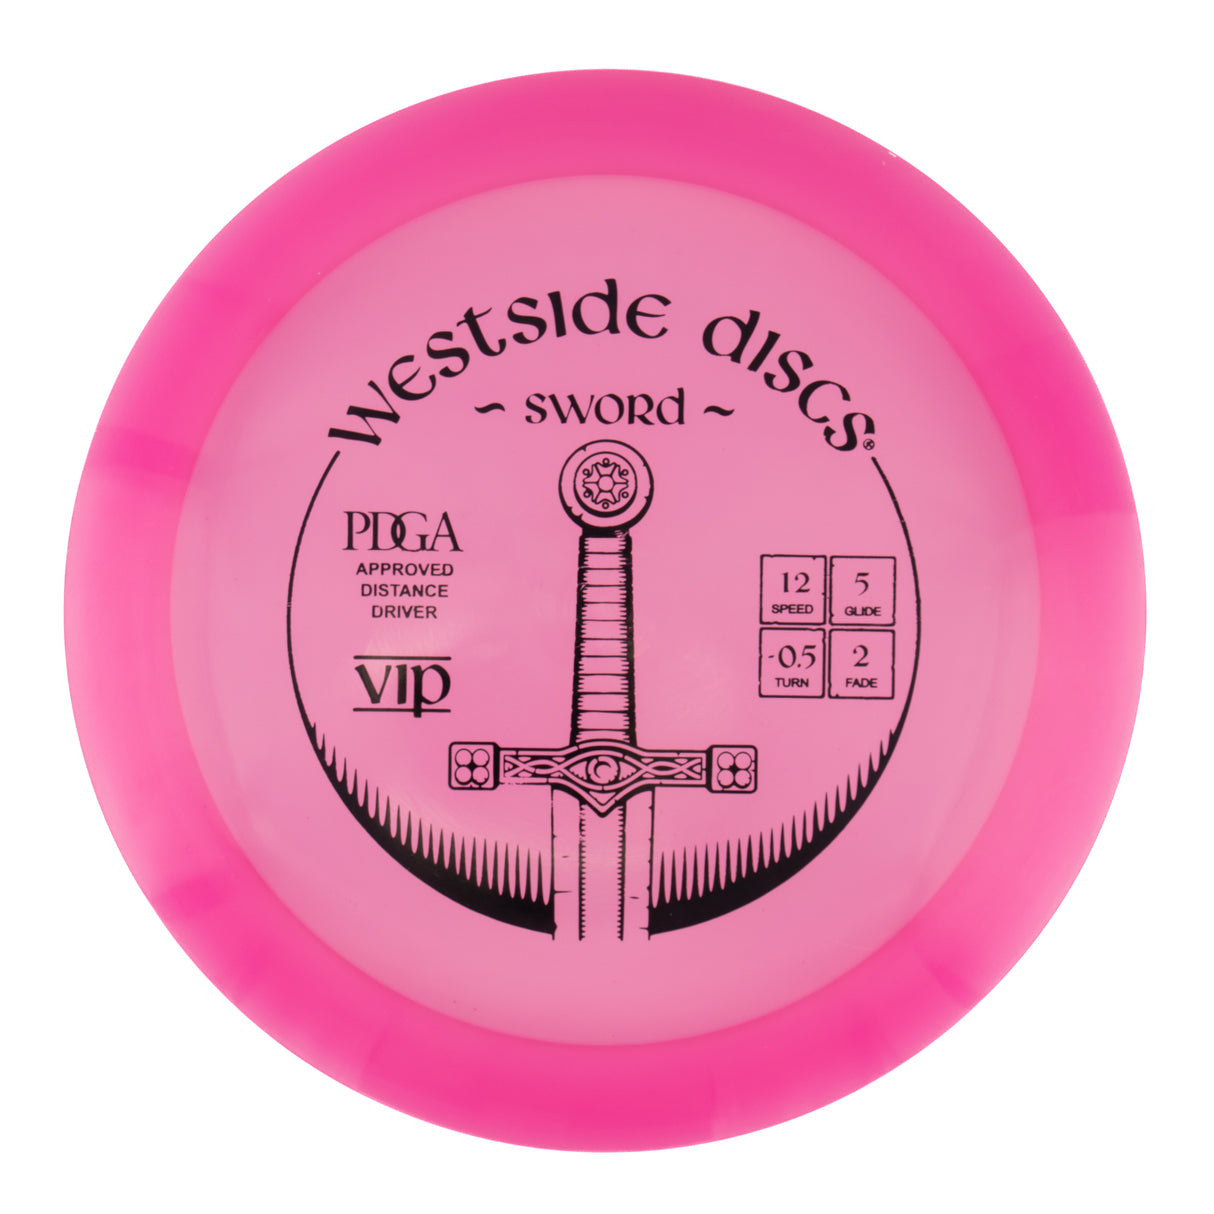 Westside Sword - VIP 176g | Style 0001